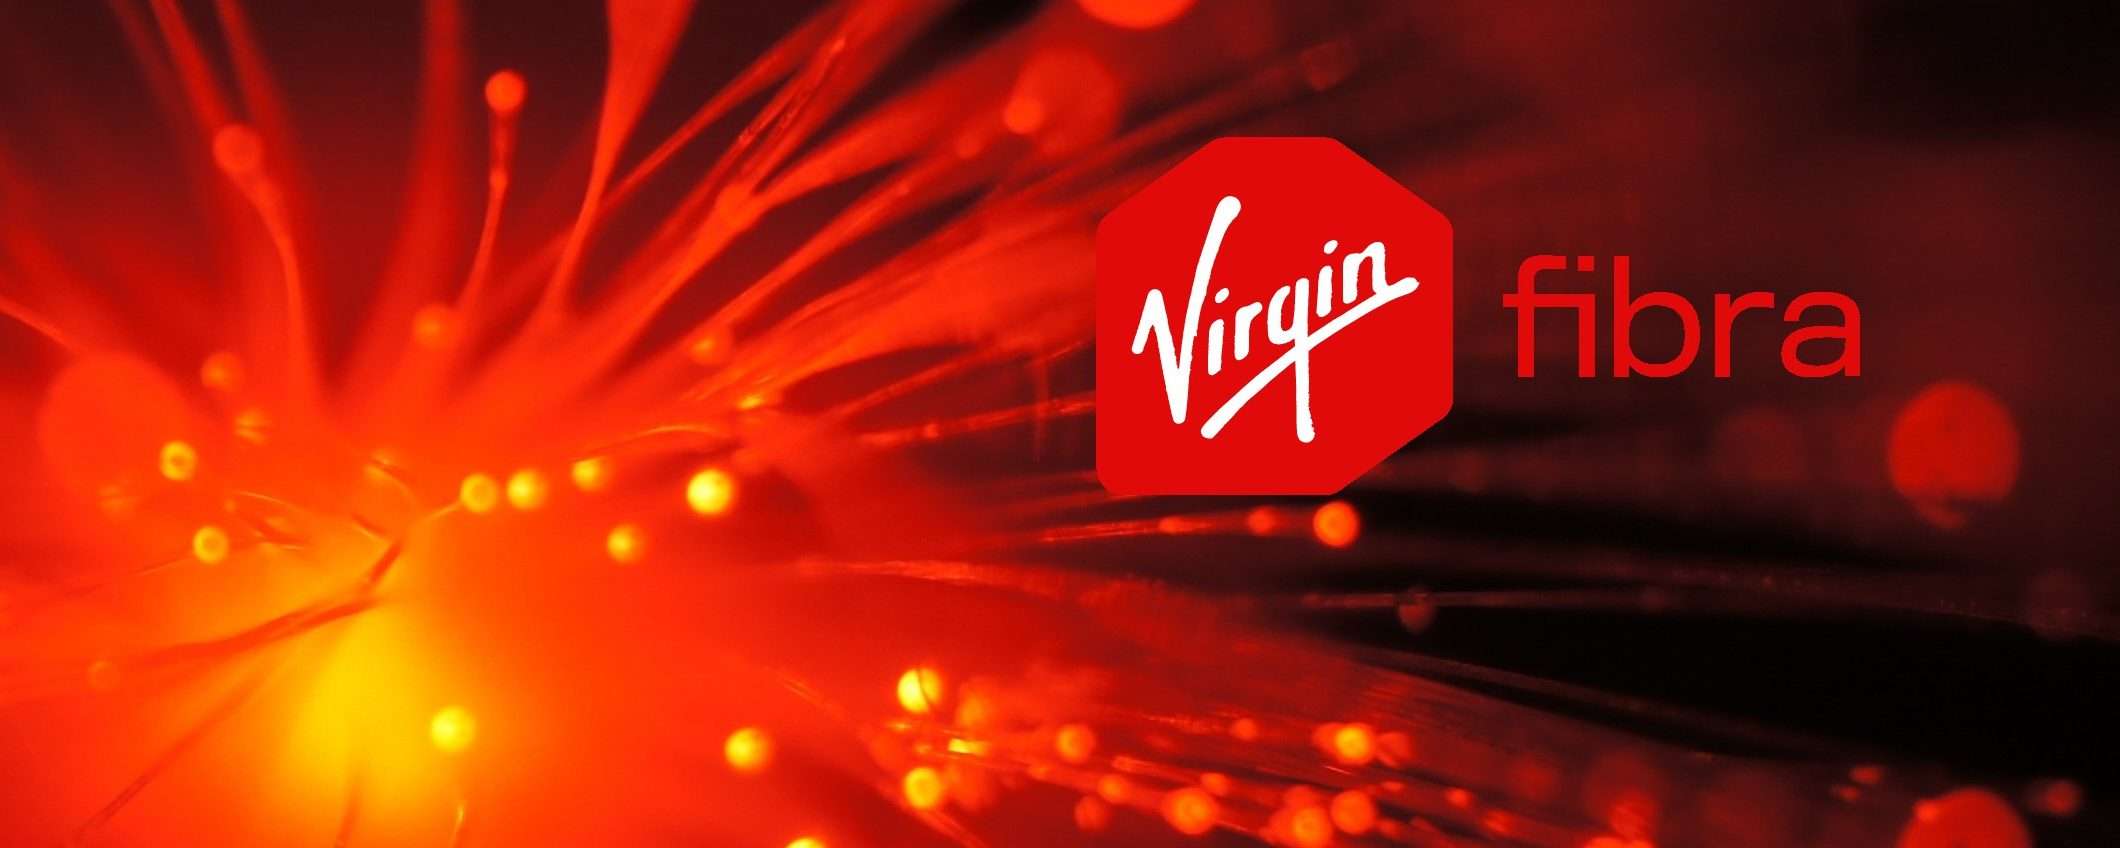 Offerta speciale per Soci Active: fibra pura di Virgin con costo iniziale scontato